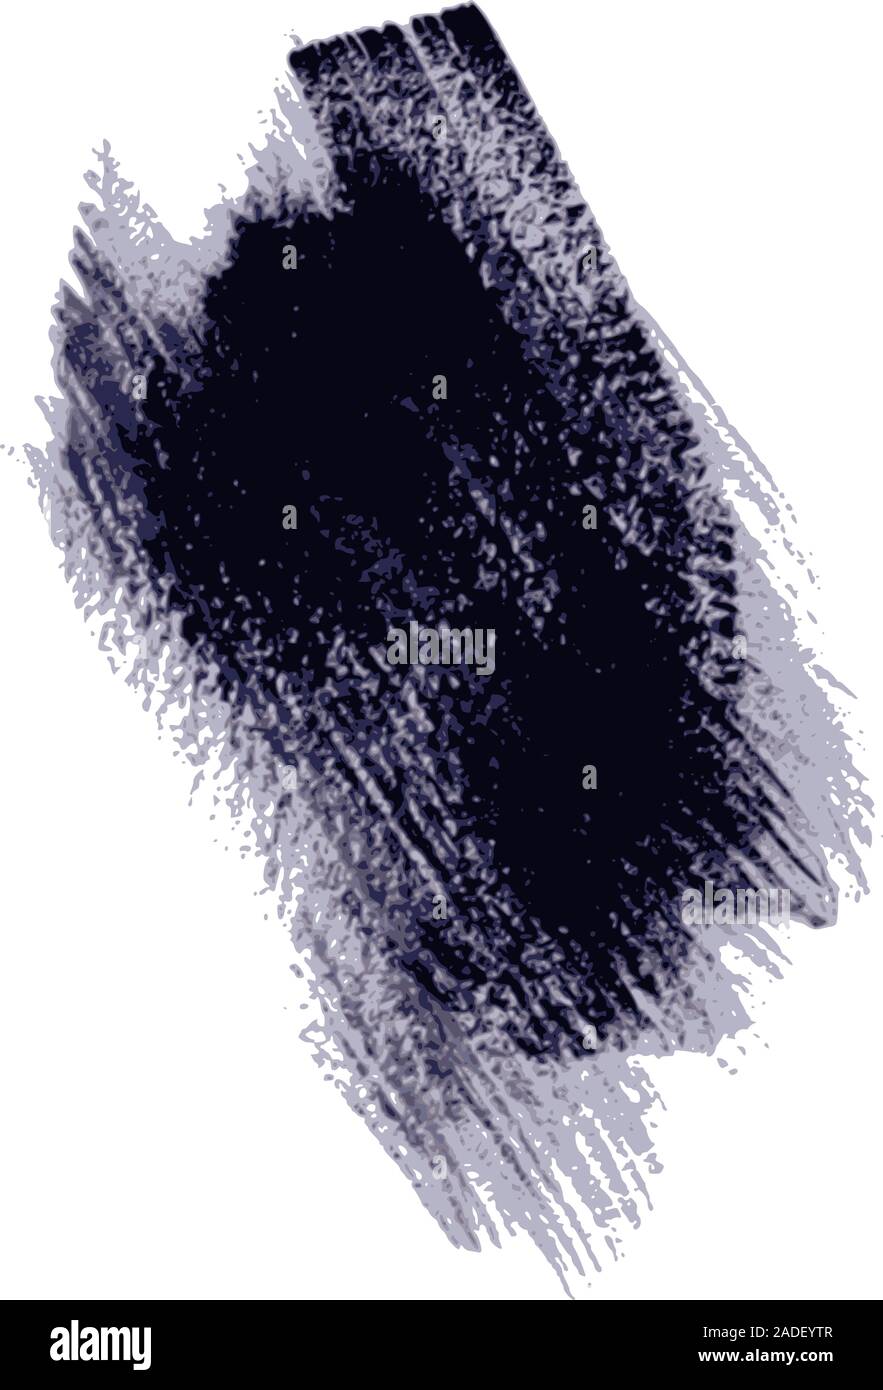 Les coups de pinceau de peinture bleu foncé isolated on white Illustration de Vecteur